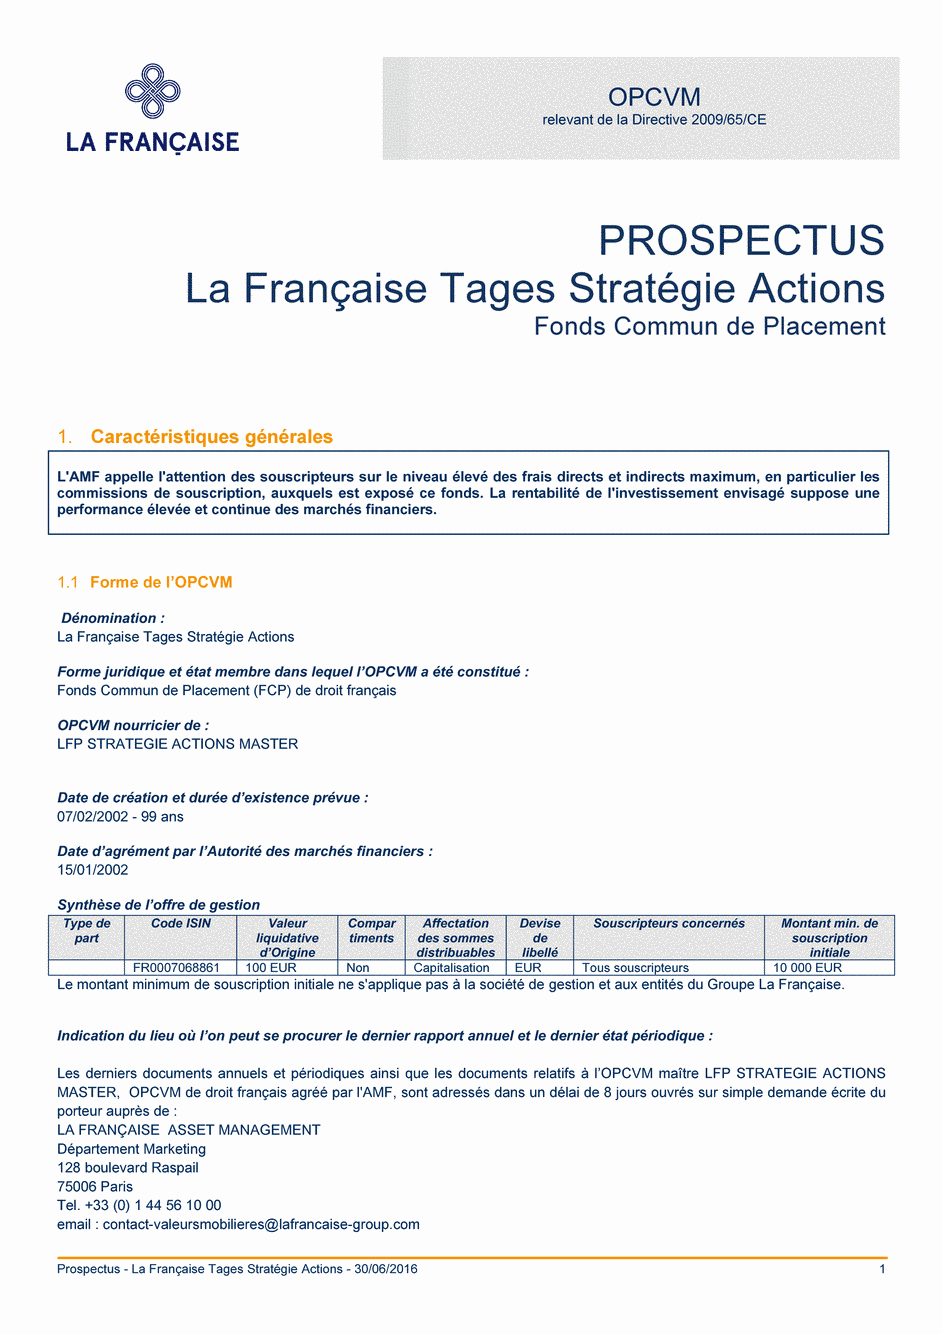 Prospectus La Française Tages Stratégie Actions - 30/06/2016 - Français